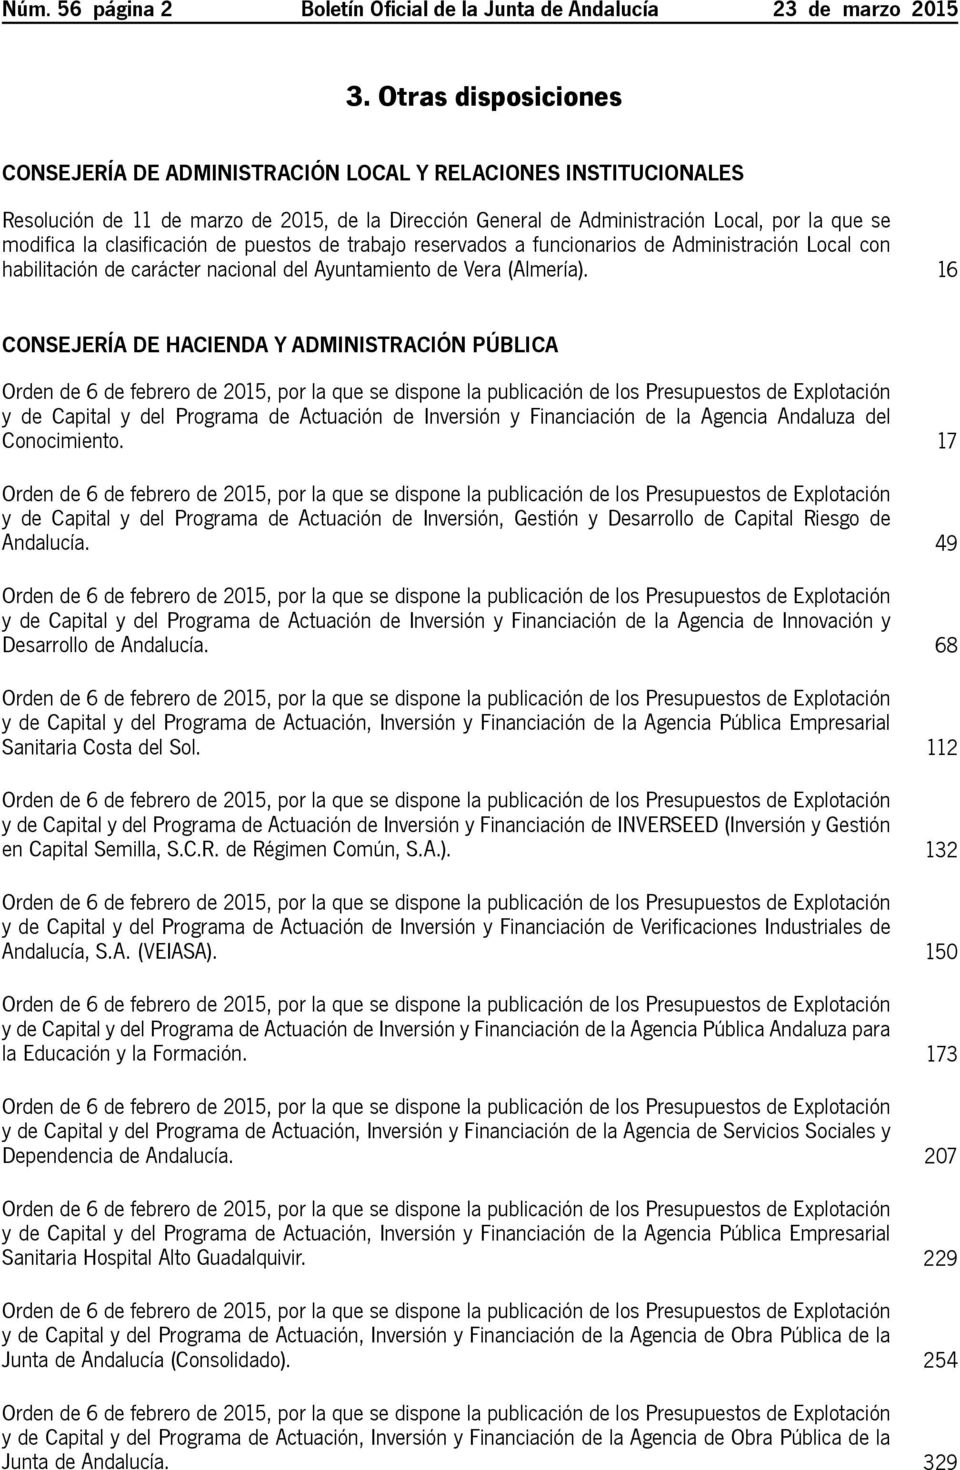 clasificación de puestos de trabajo reservados a funcionarios de Administración Local con habilitación de carácter nacional del Ayuntamiento de Vera (Almería).